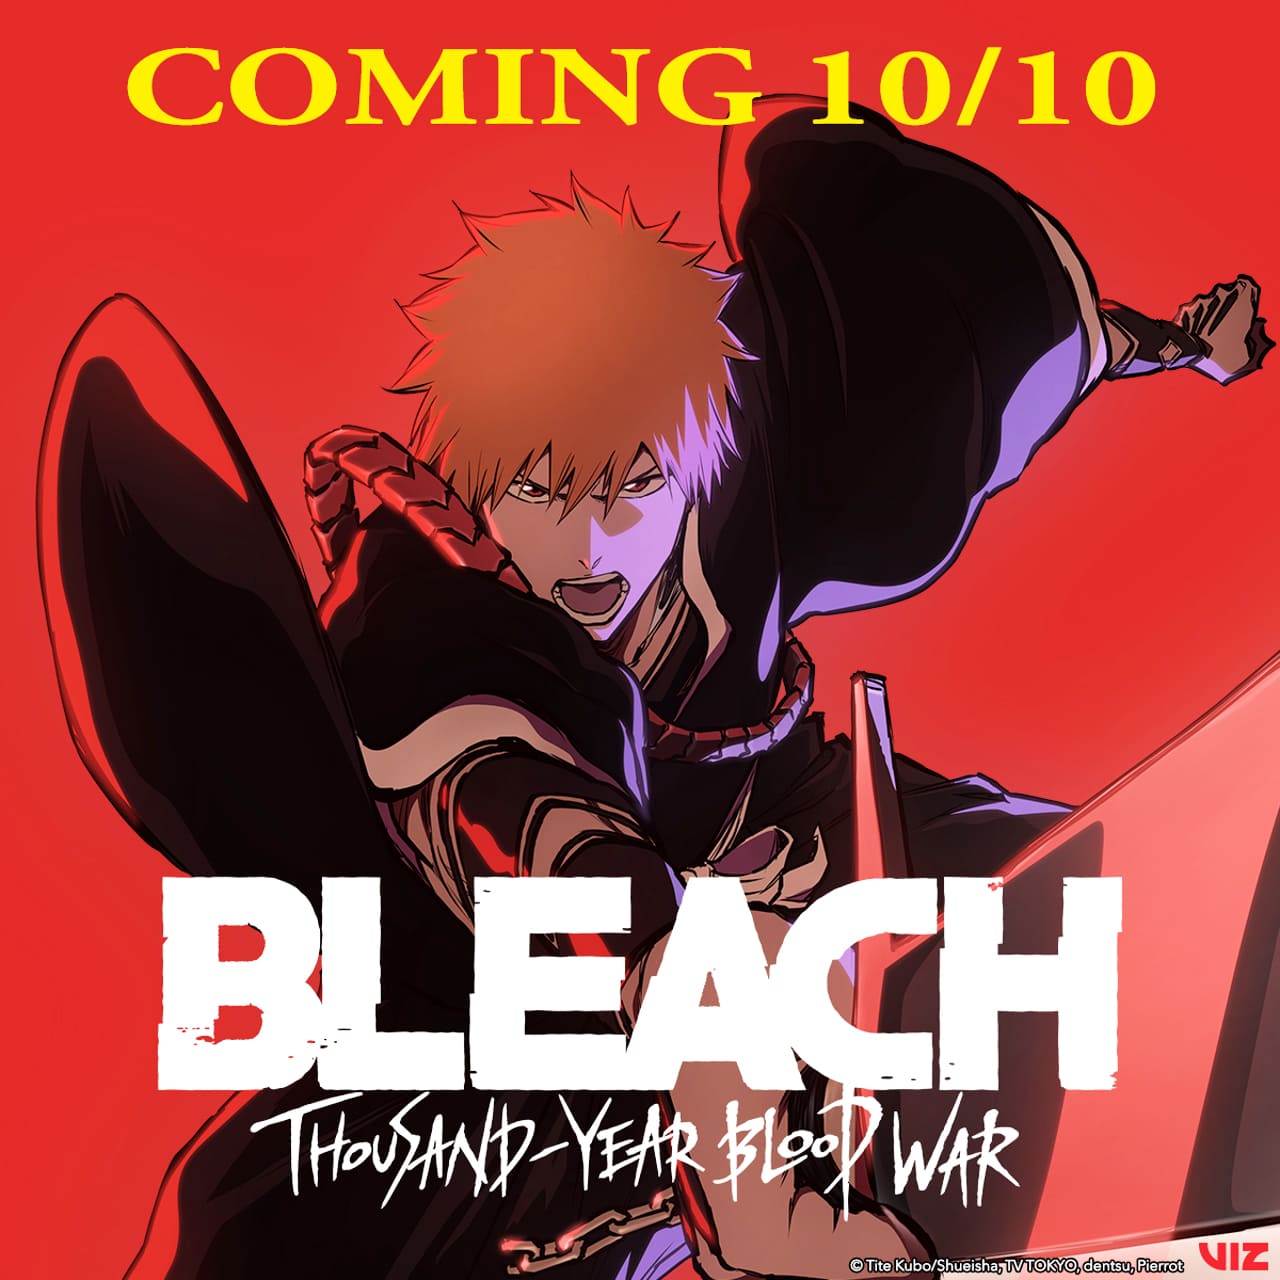 Bleach: Thousand-Year Blood War blickt mit besonderem Ending auf Ichigos  Kämpfe zurück - Crunchyroll News